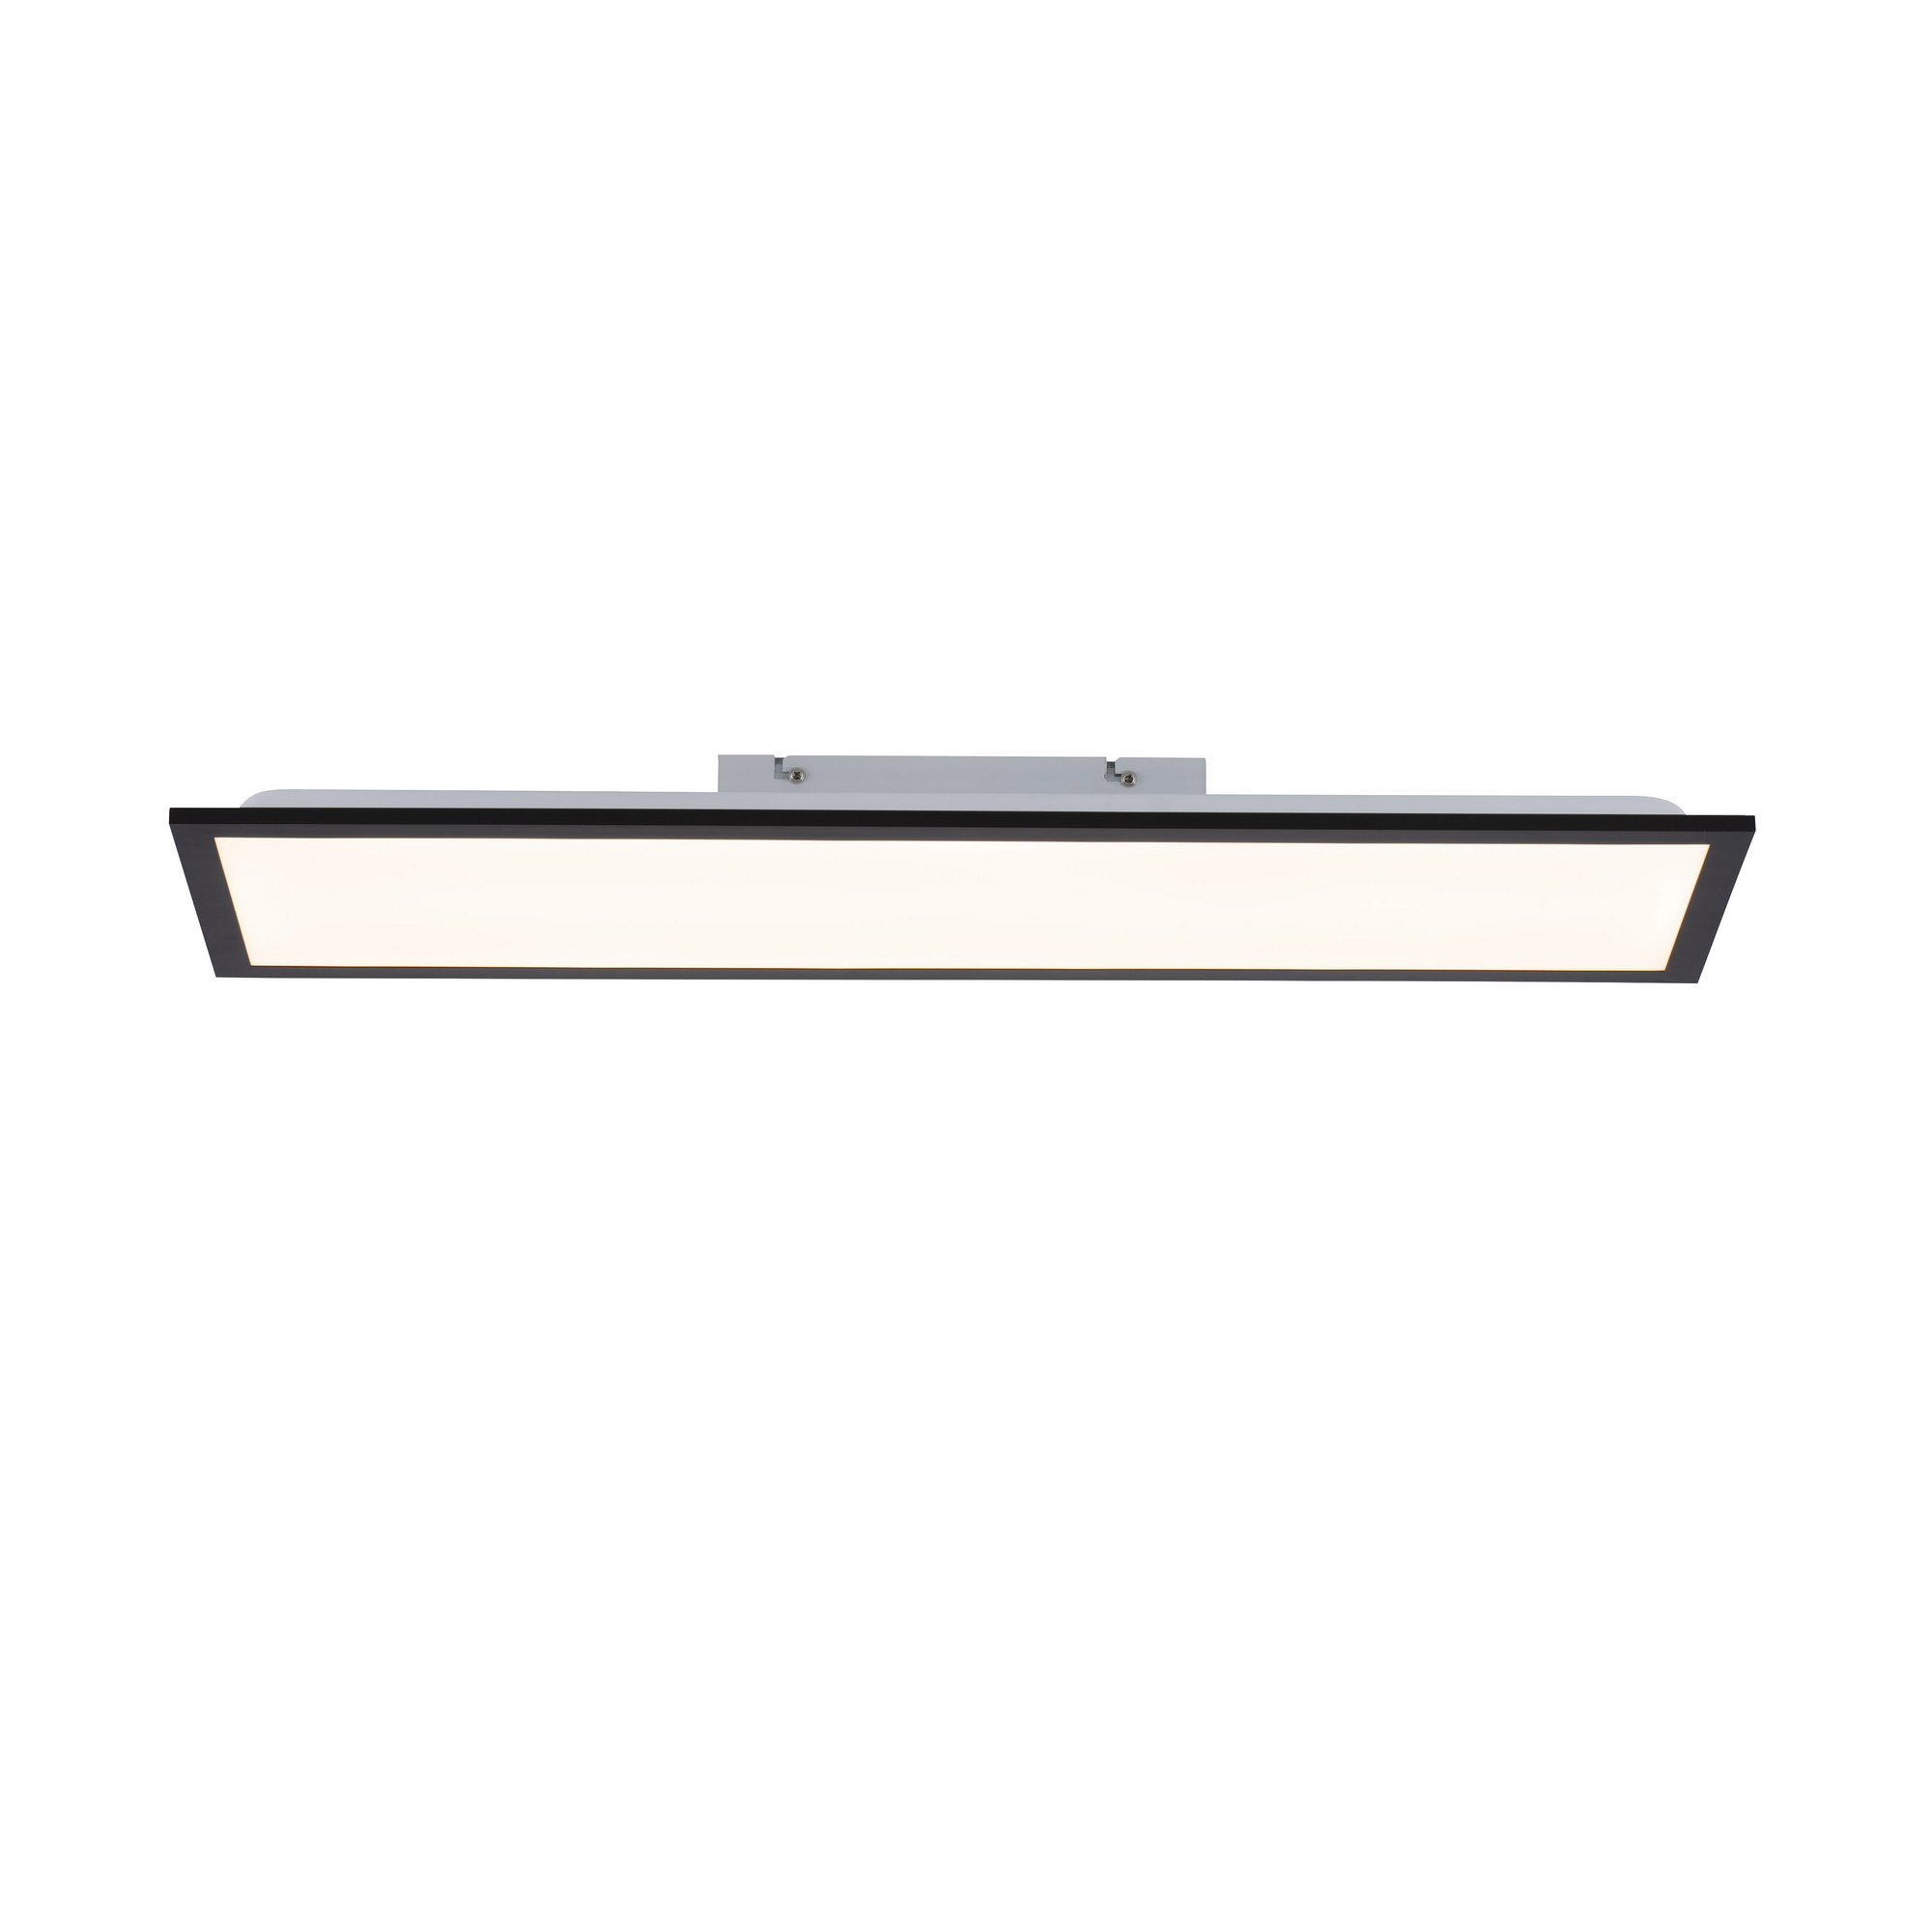 LED-Deckenleuchte 'Flat' schwarz 29,5 x 6,1 cm 1080 lm + product picture